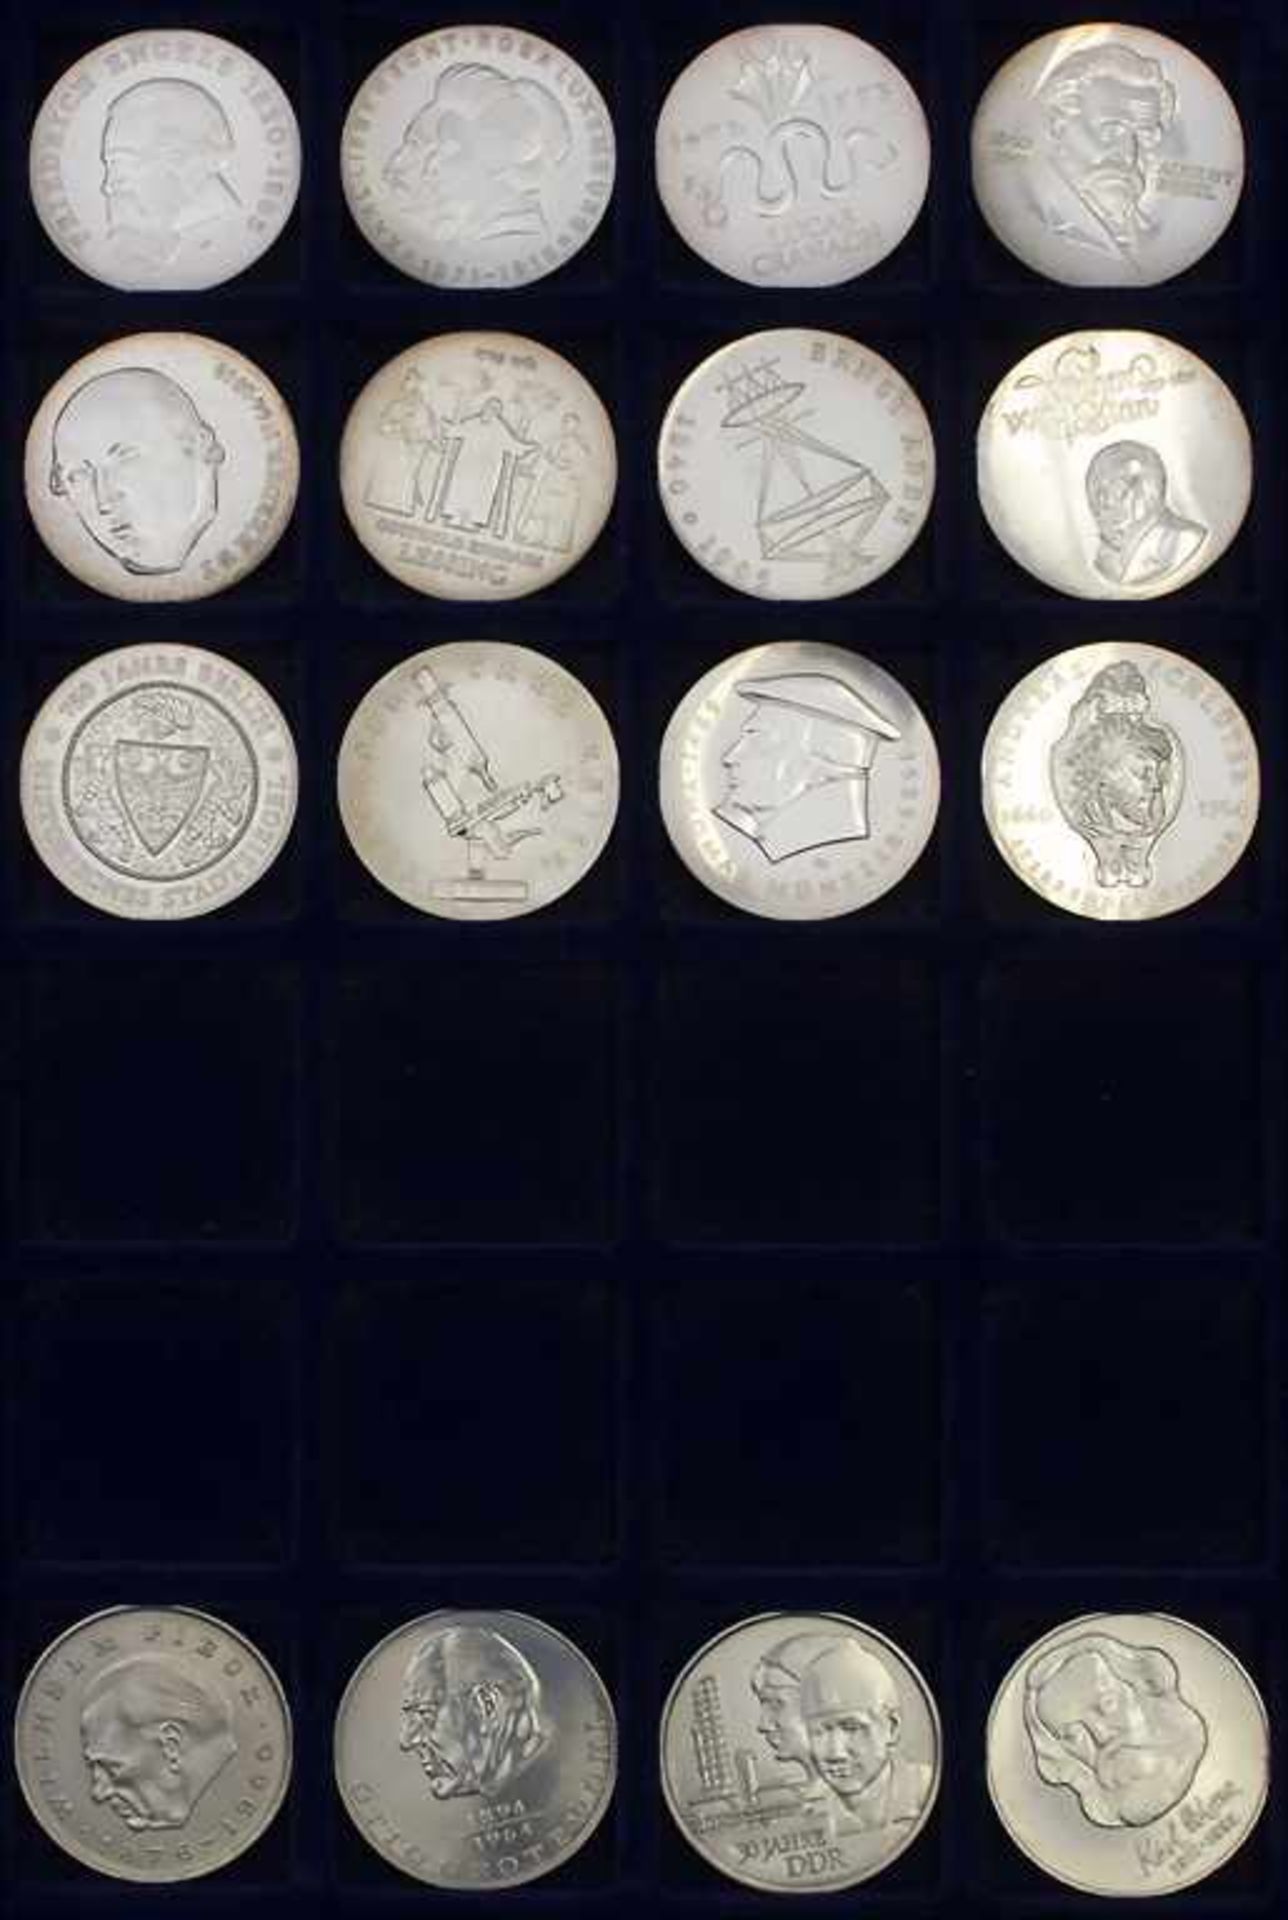 Komplette Sammlung Gedenkmünzen der DDR / Collection commemorative coins of the GDR* 5 Mark: - Bild 7 aus 22